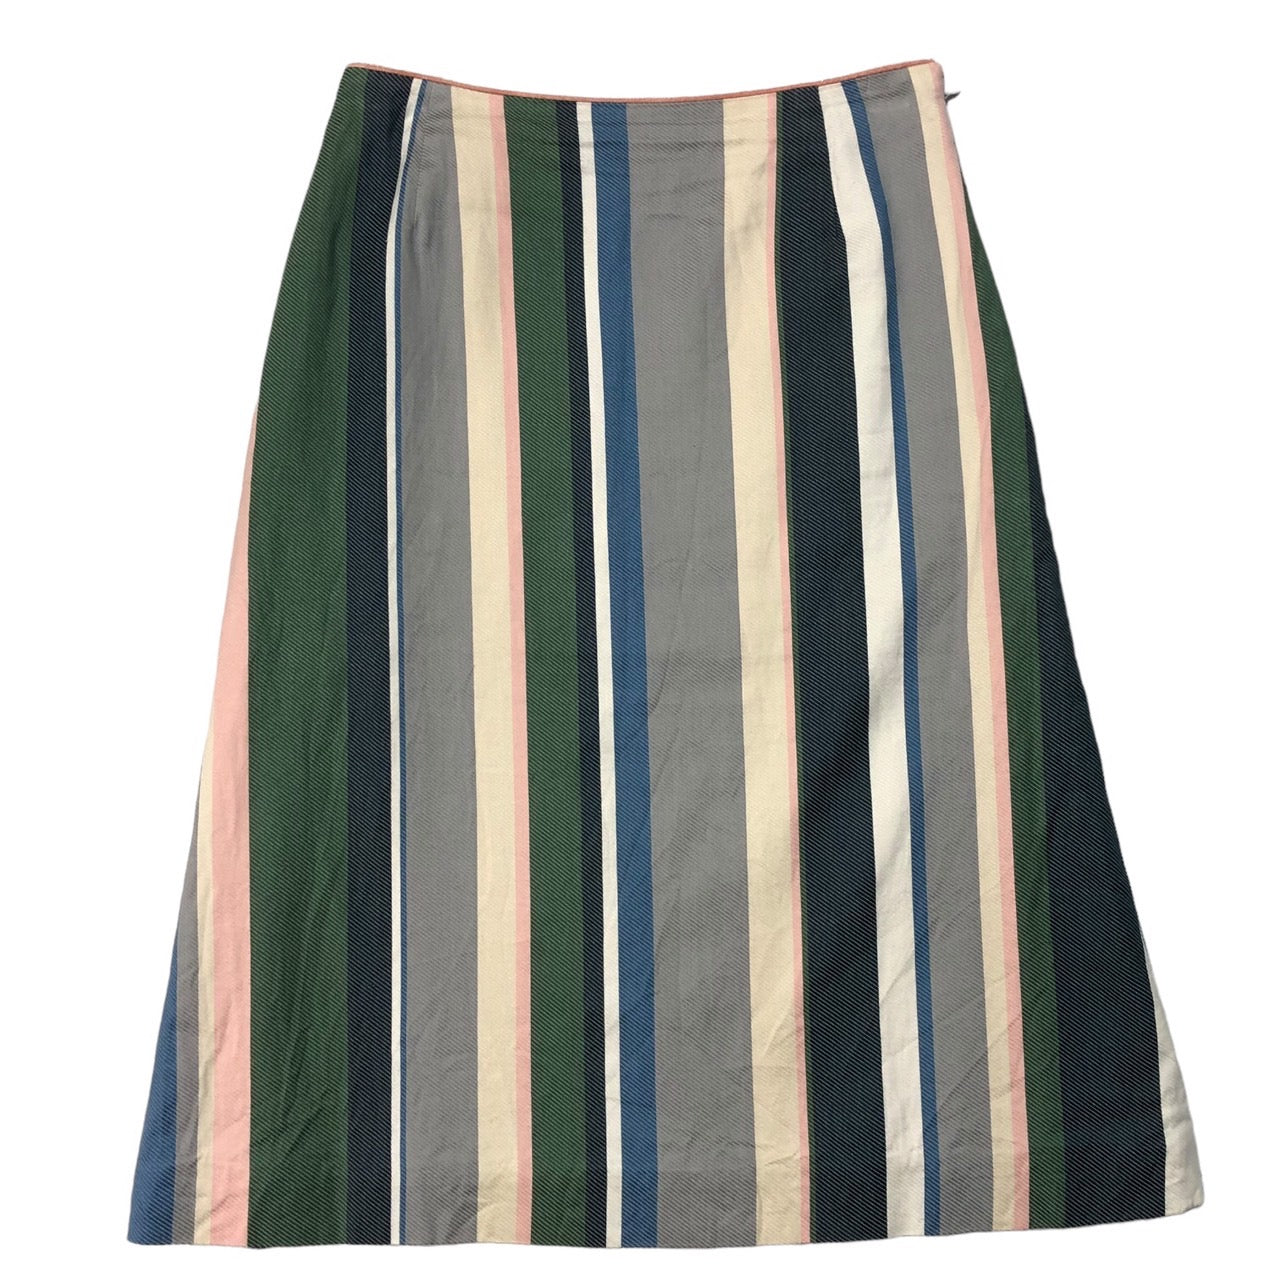 mina perhonen(ミナペルホネン) multi striped skirt マルチストライプ スカート hs5145 SIZE FREE  マルチカラー